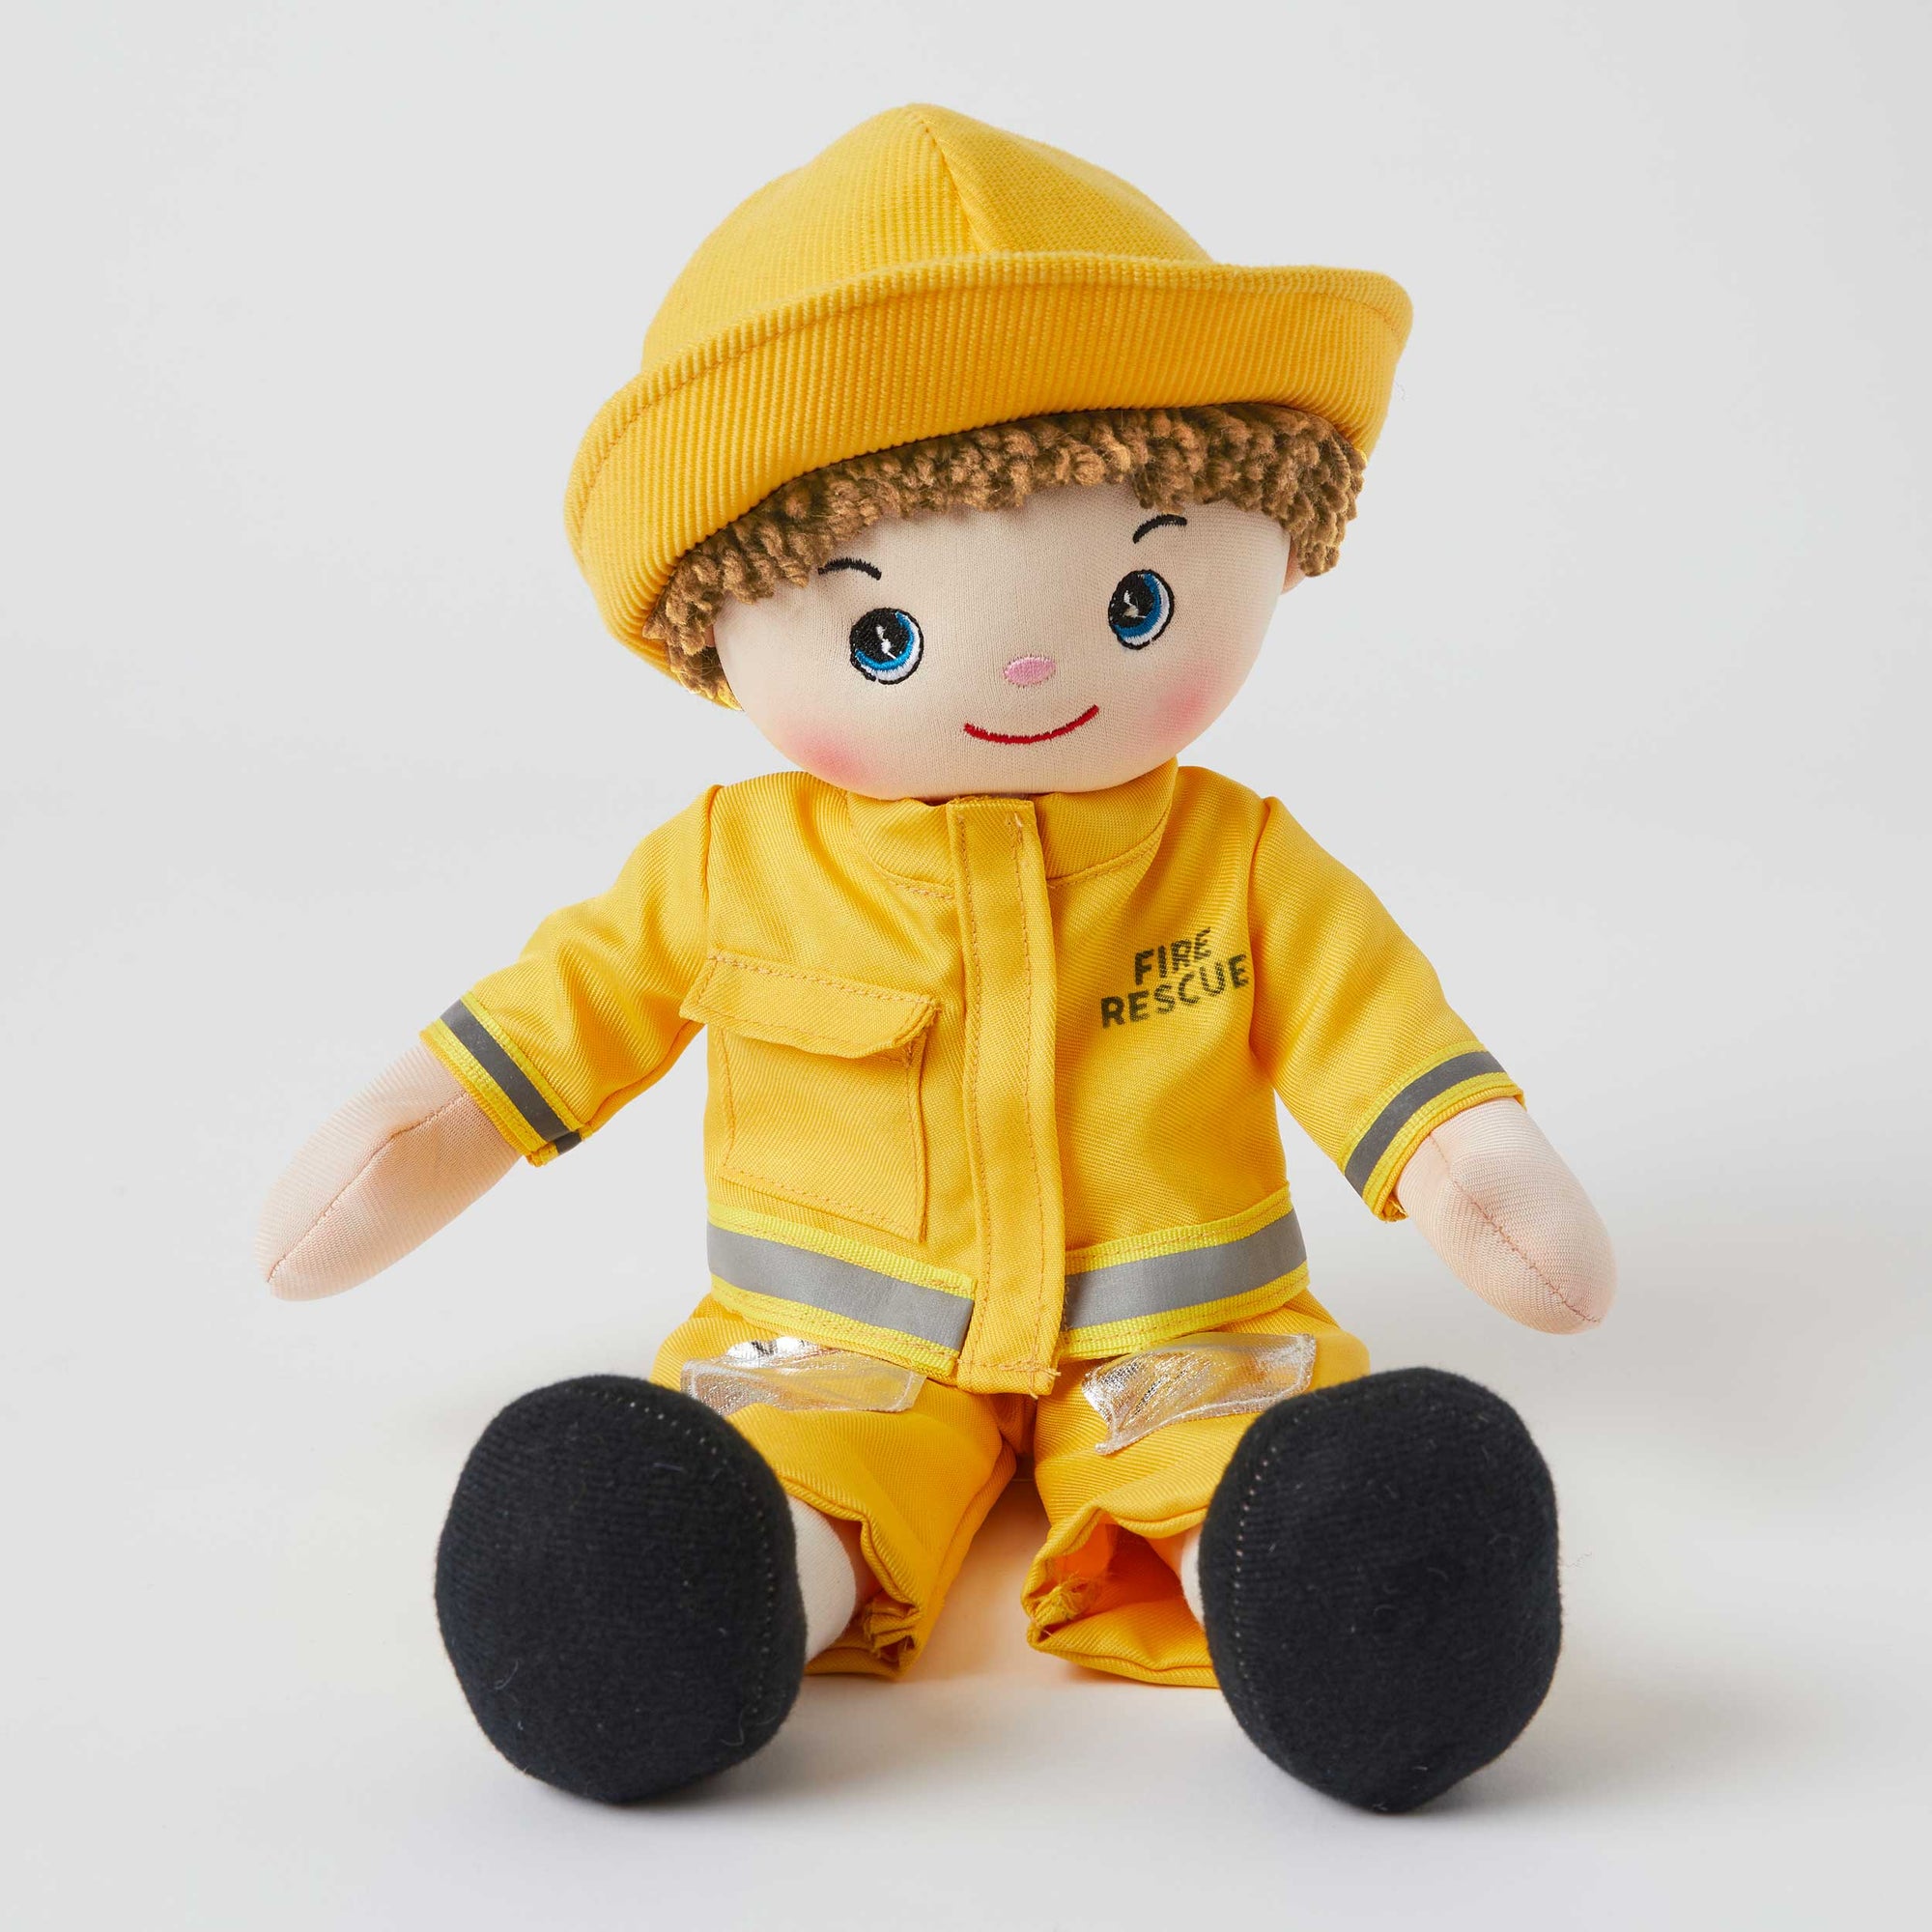 My Best Friend Eddy - Firefighter Doll - Boy